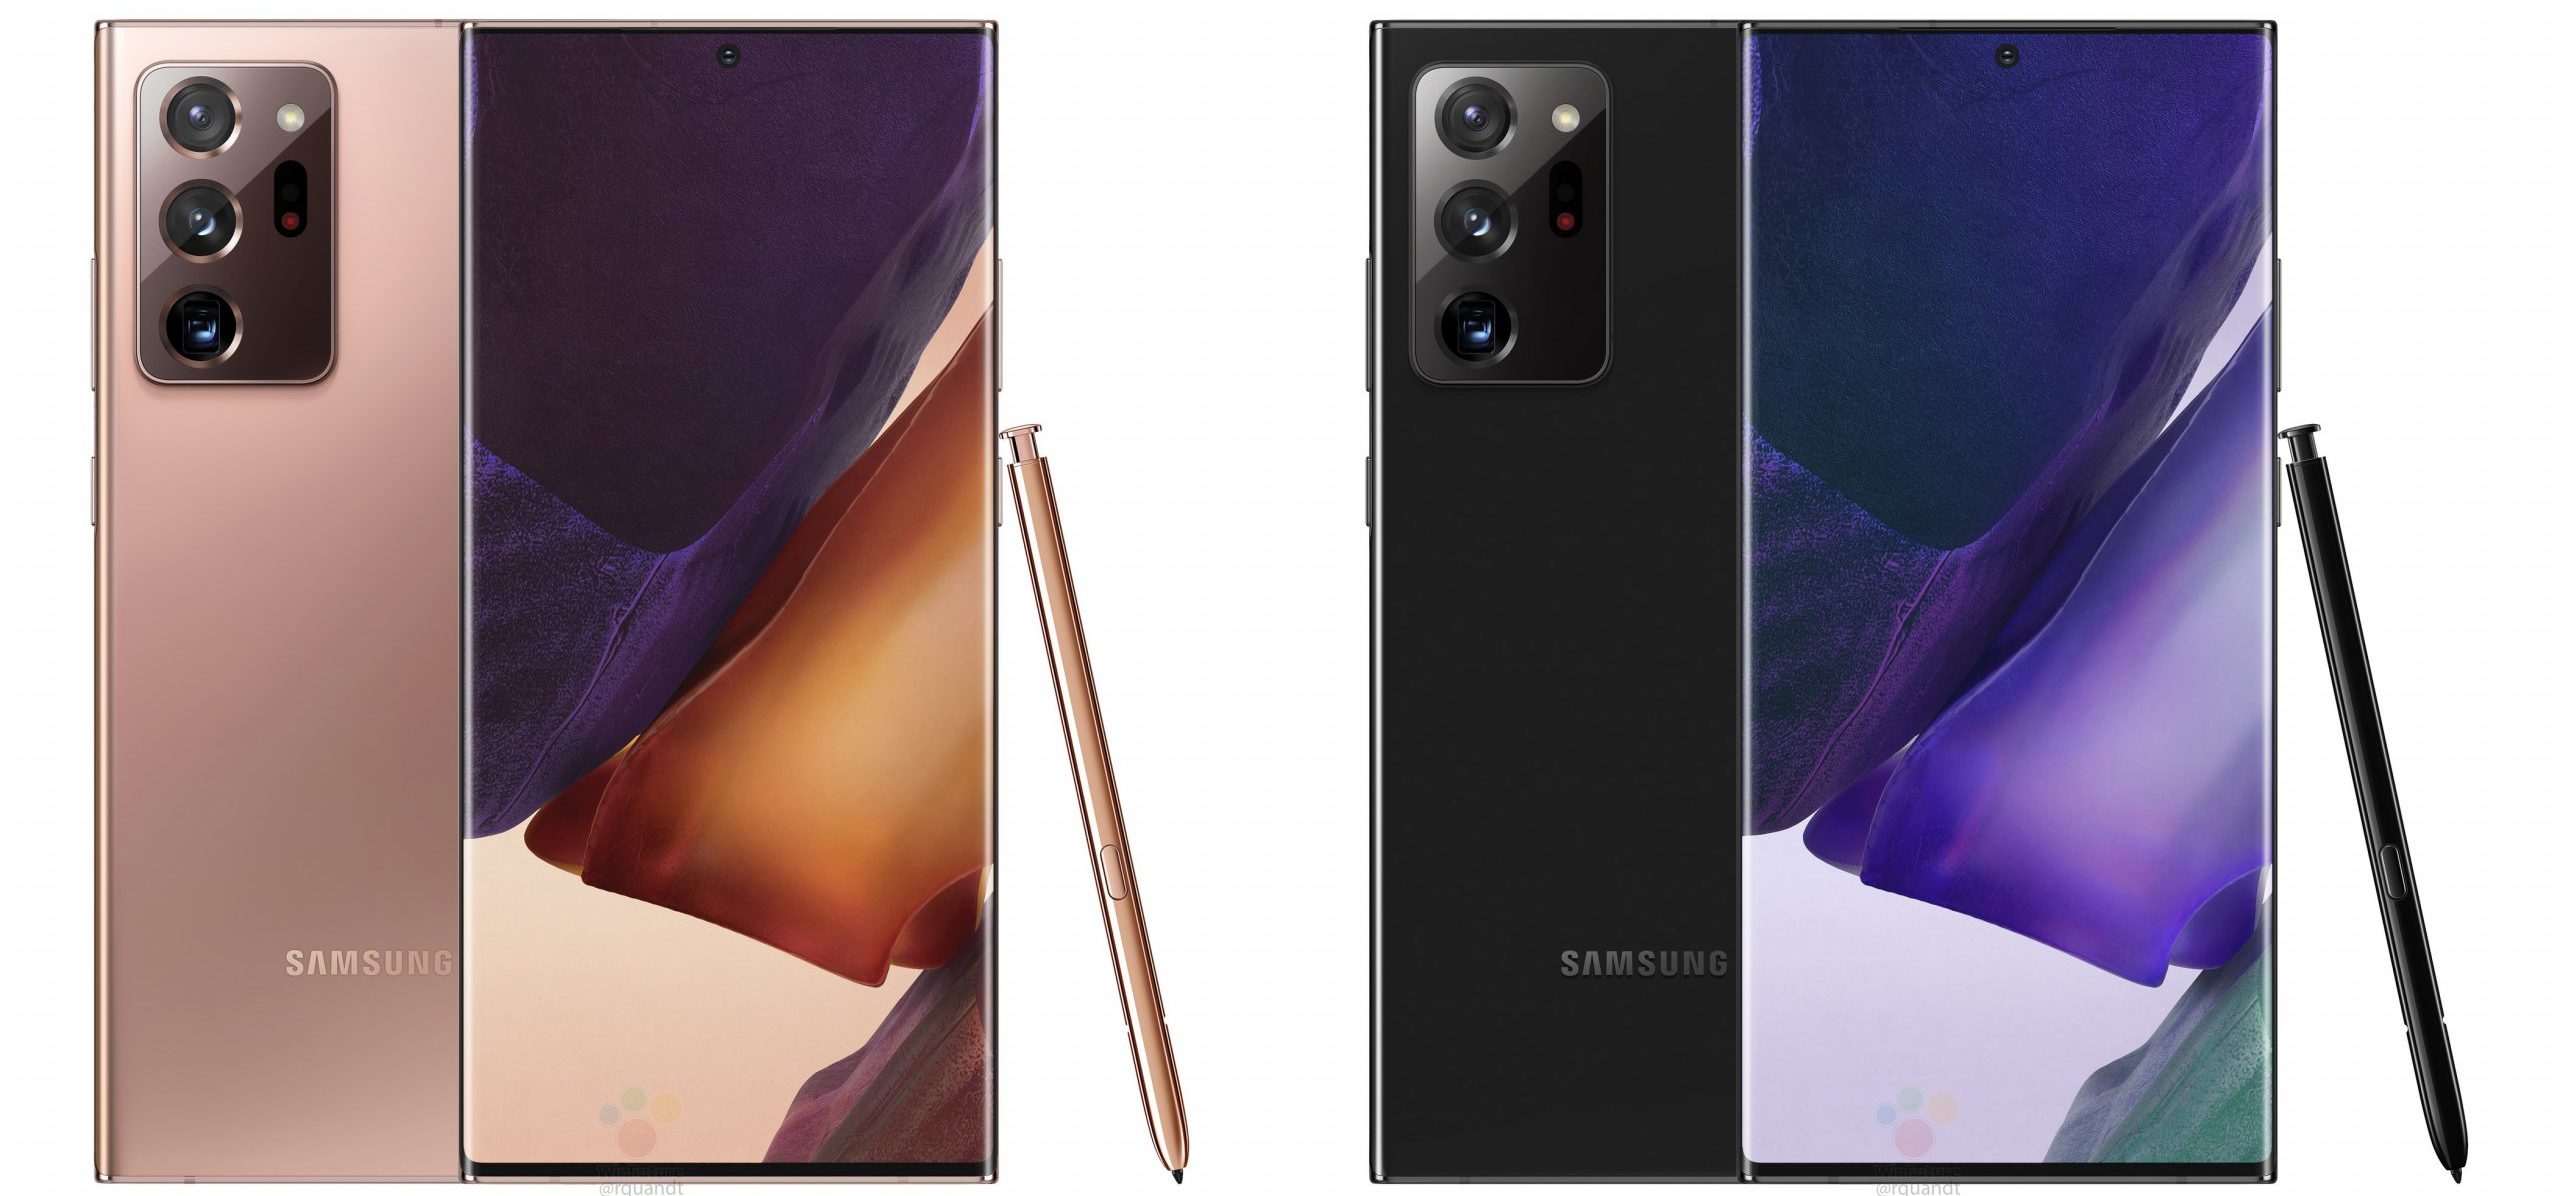 Oversigt over smartphones Samsung Galaxy Note20 og Note20 Ultra